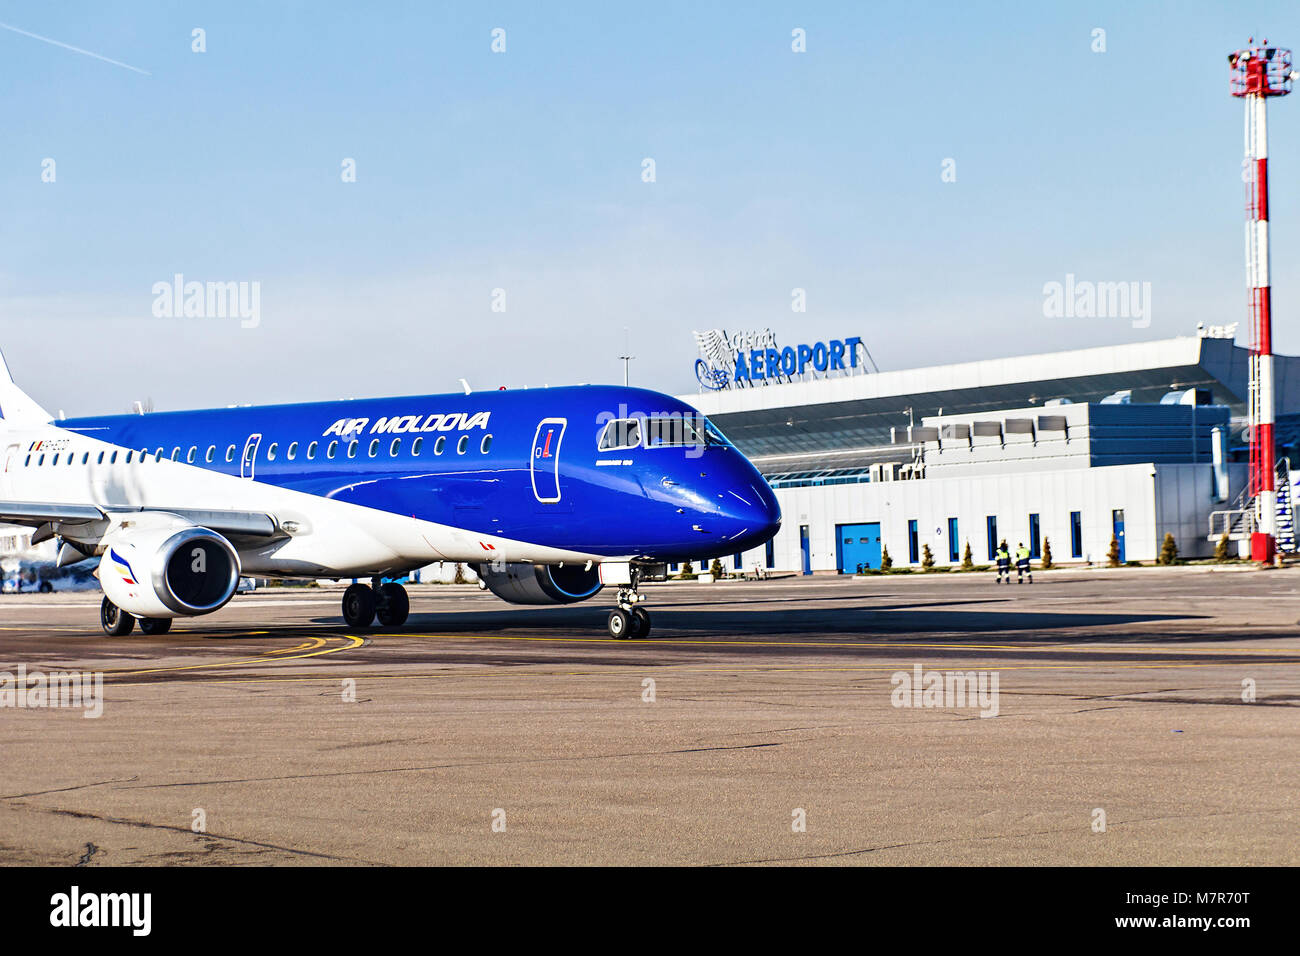 Chisinau airport immagini e fotografie stock ad alta risoluzione - Alamy